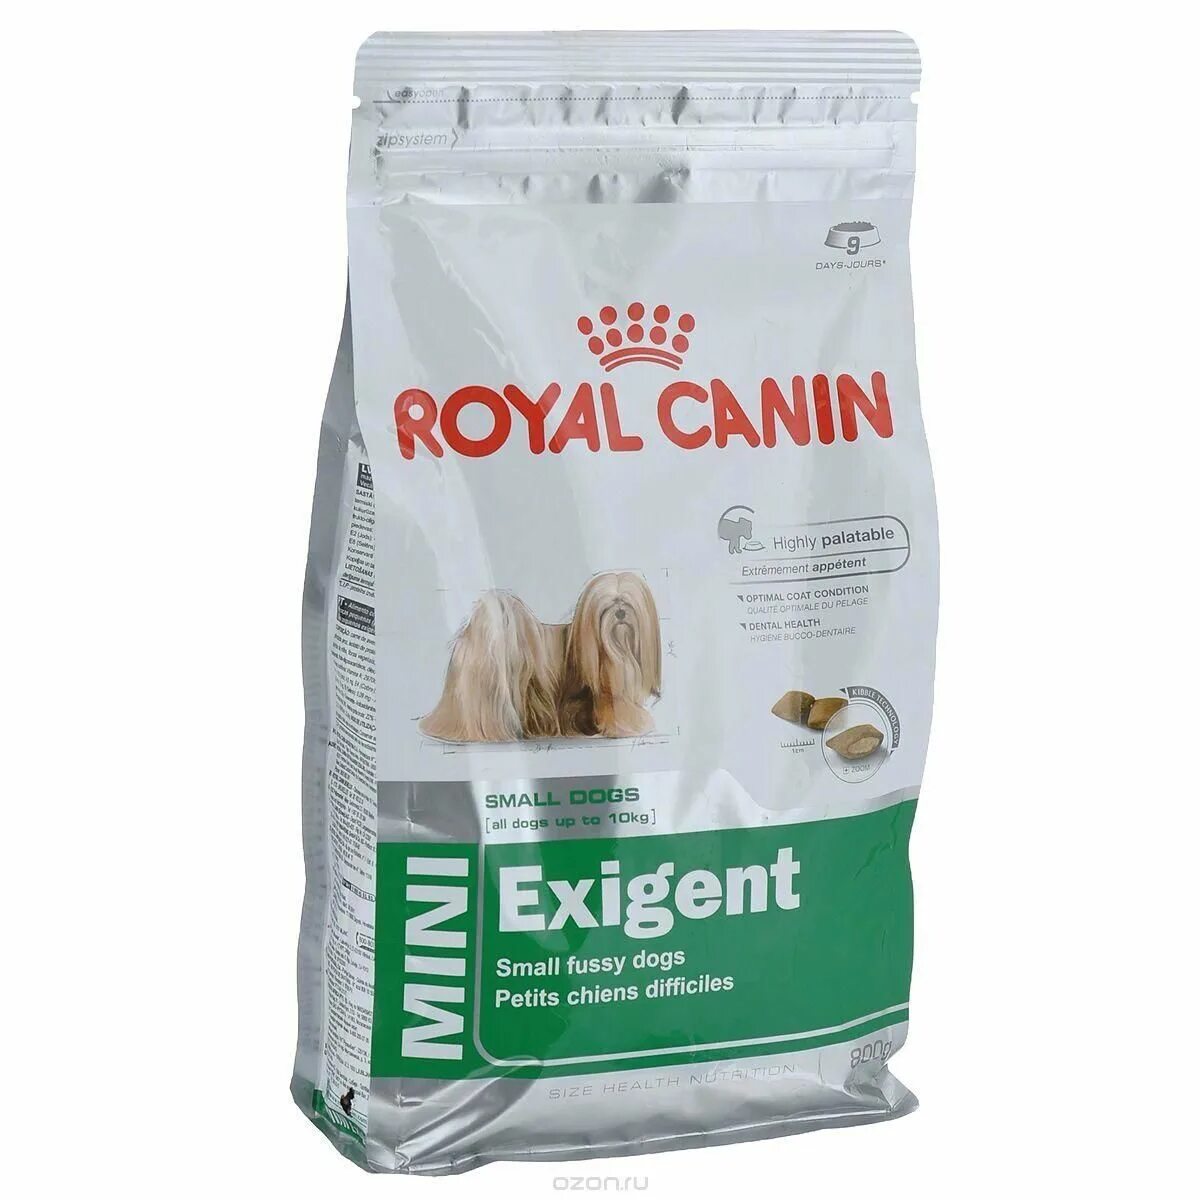 Купить корм royal canin для собак. Мини Эксиджент 3 кг Роял Канин. Роял Канин для собак 3кг exigent. Корм Роял Канин для собак Mini exigent. Роял Канин для собак мини 800 г.